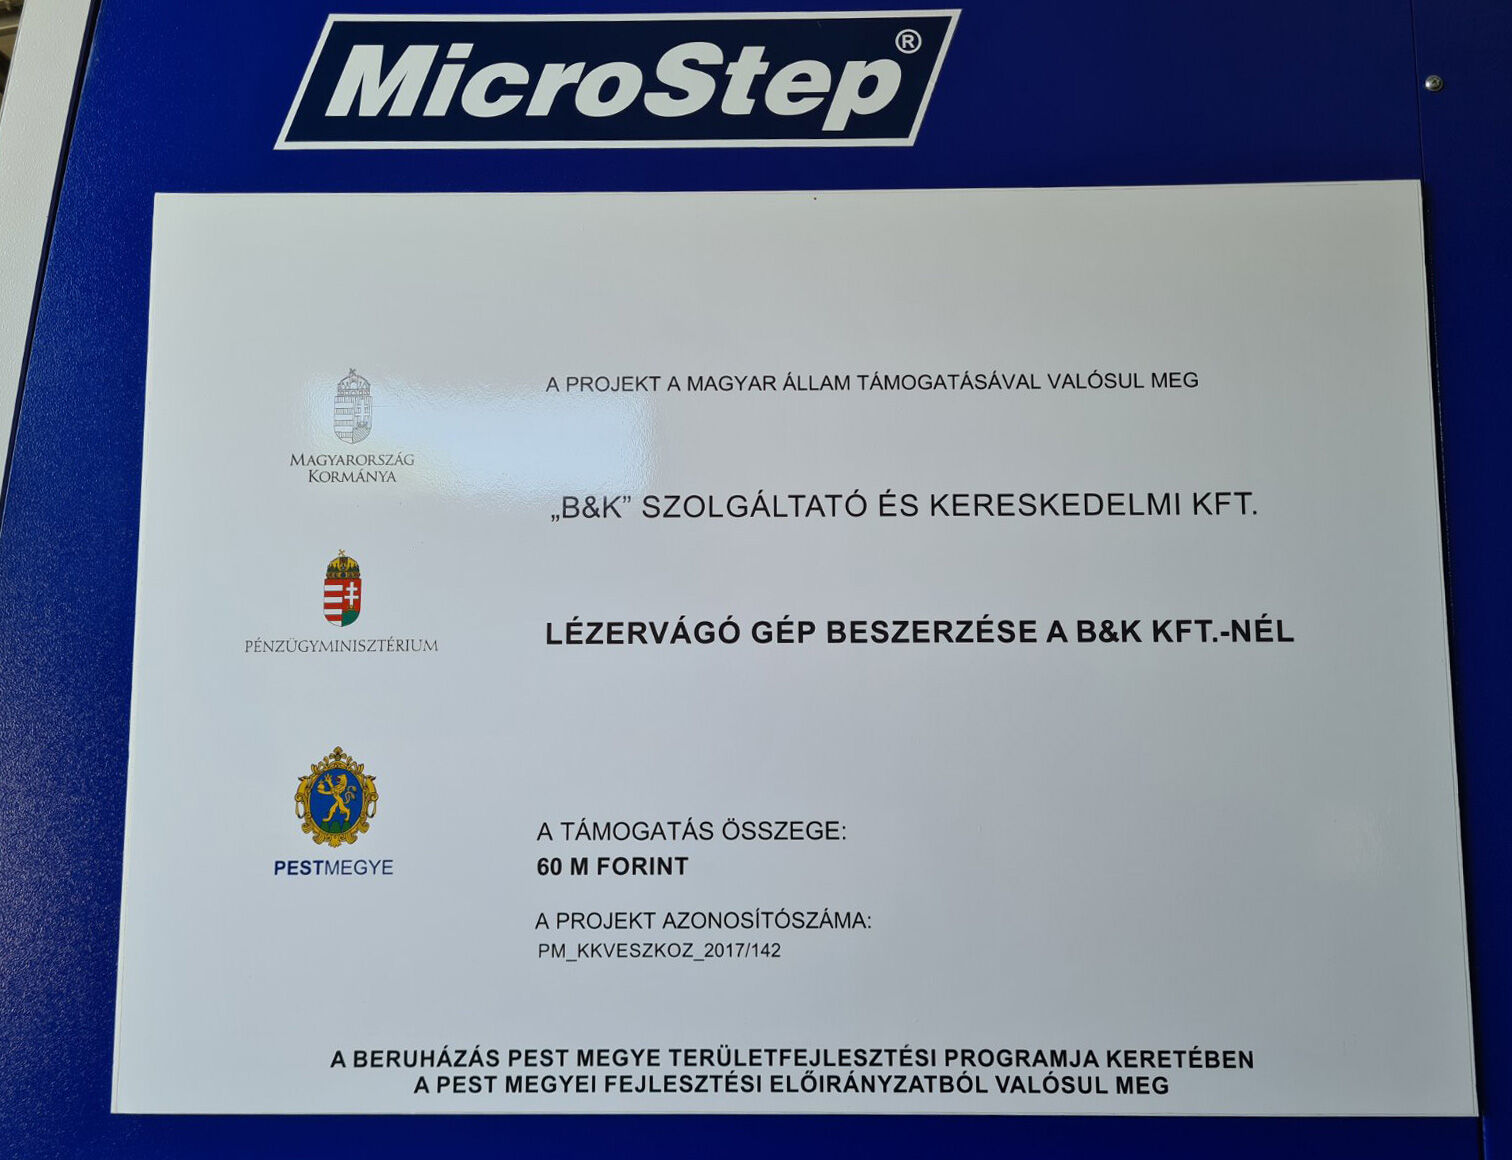 PM_KKVESZKOZ_2017 kódszámú, Mikro-, kis- és középvállalkozások eszközberuházásainak támogatása Pest megye területén